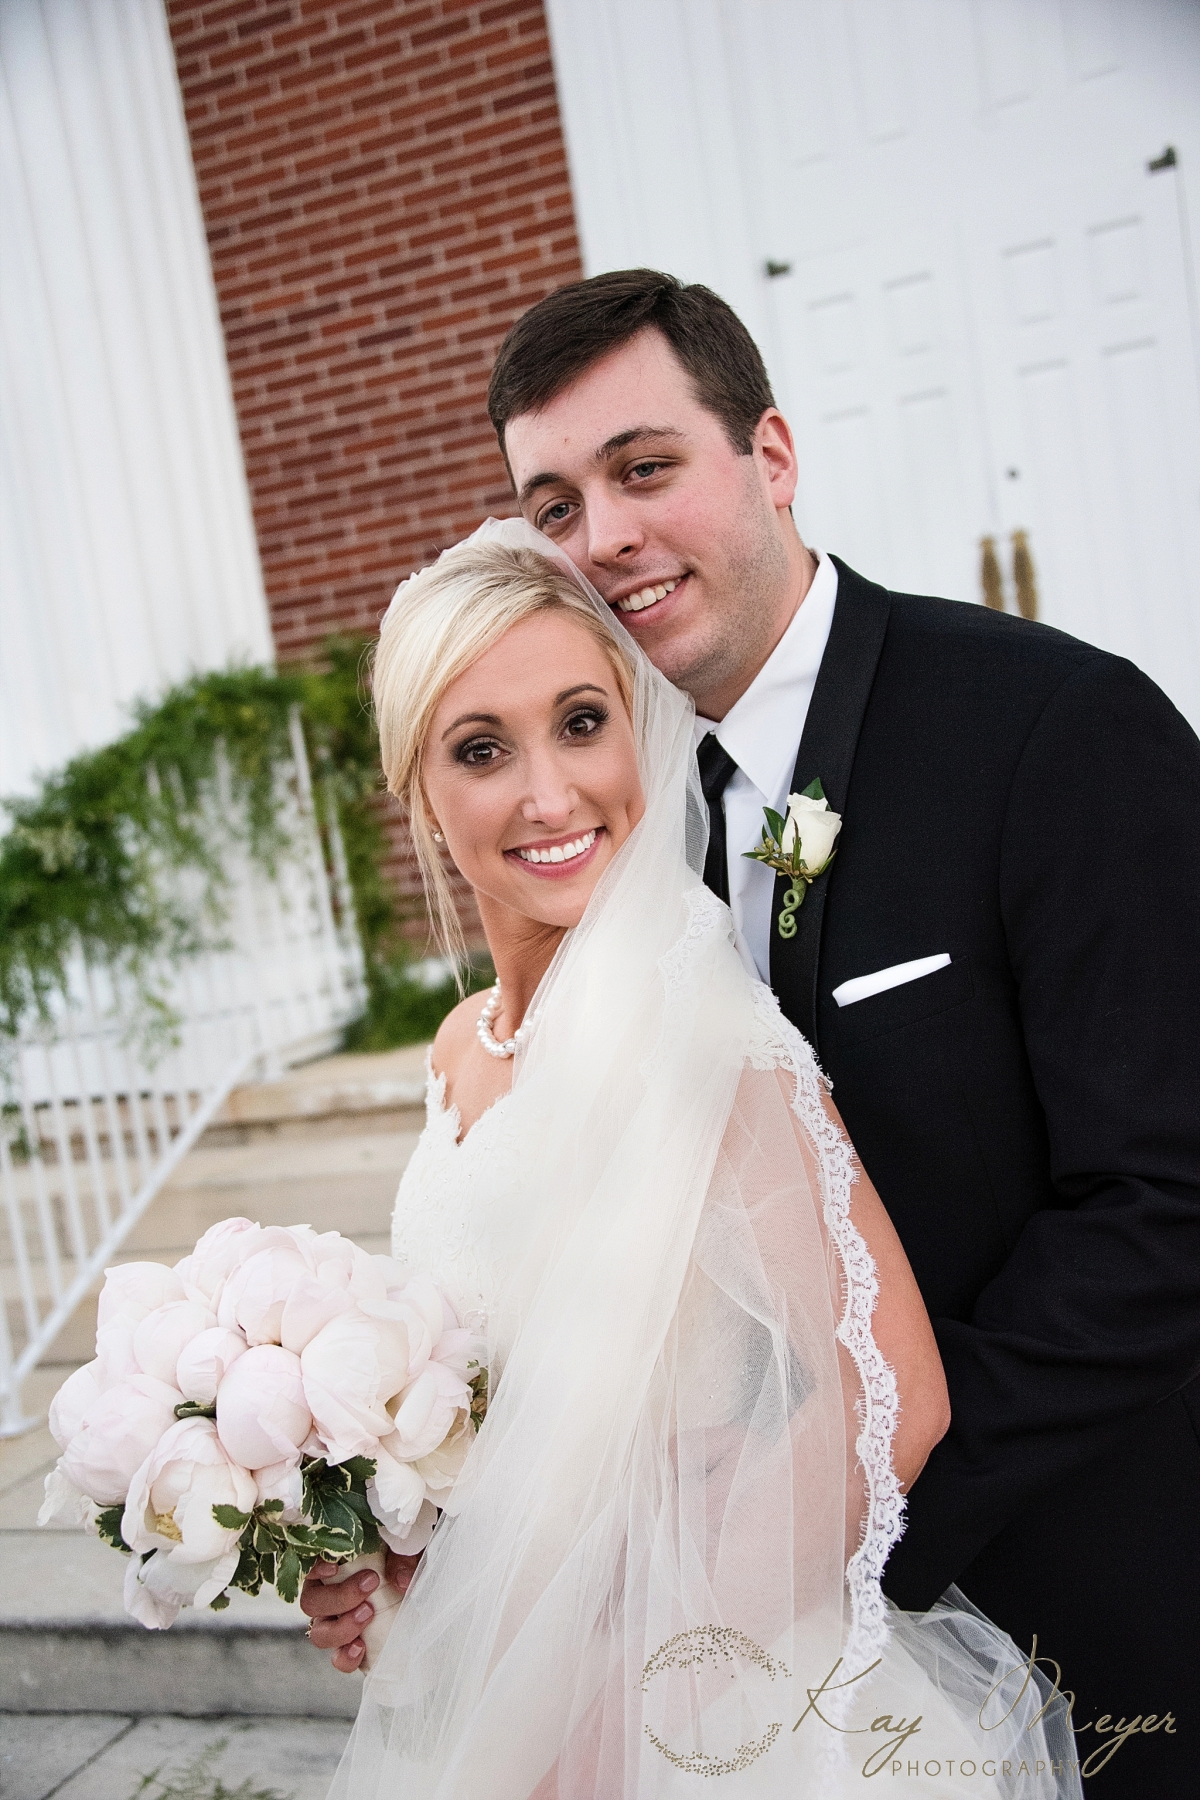 Tallahassee wedding and bridal makeup